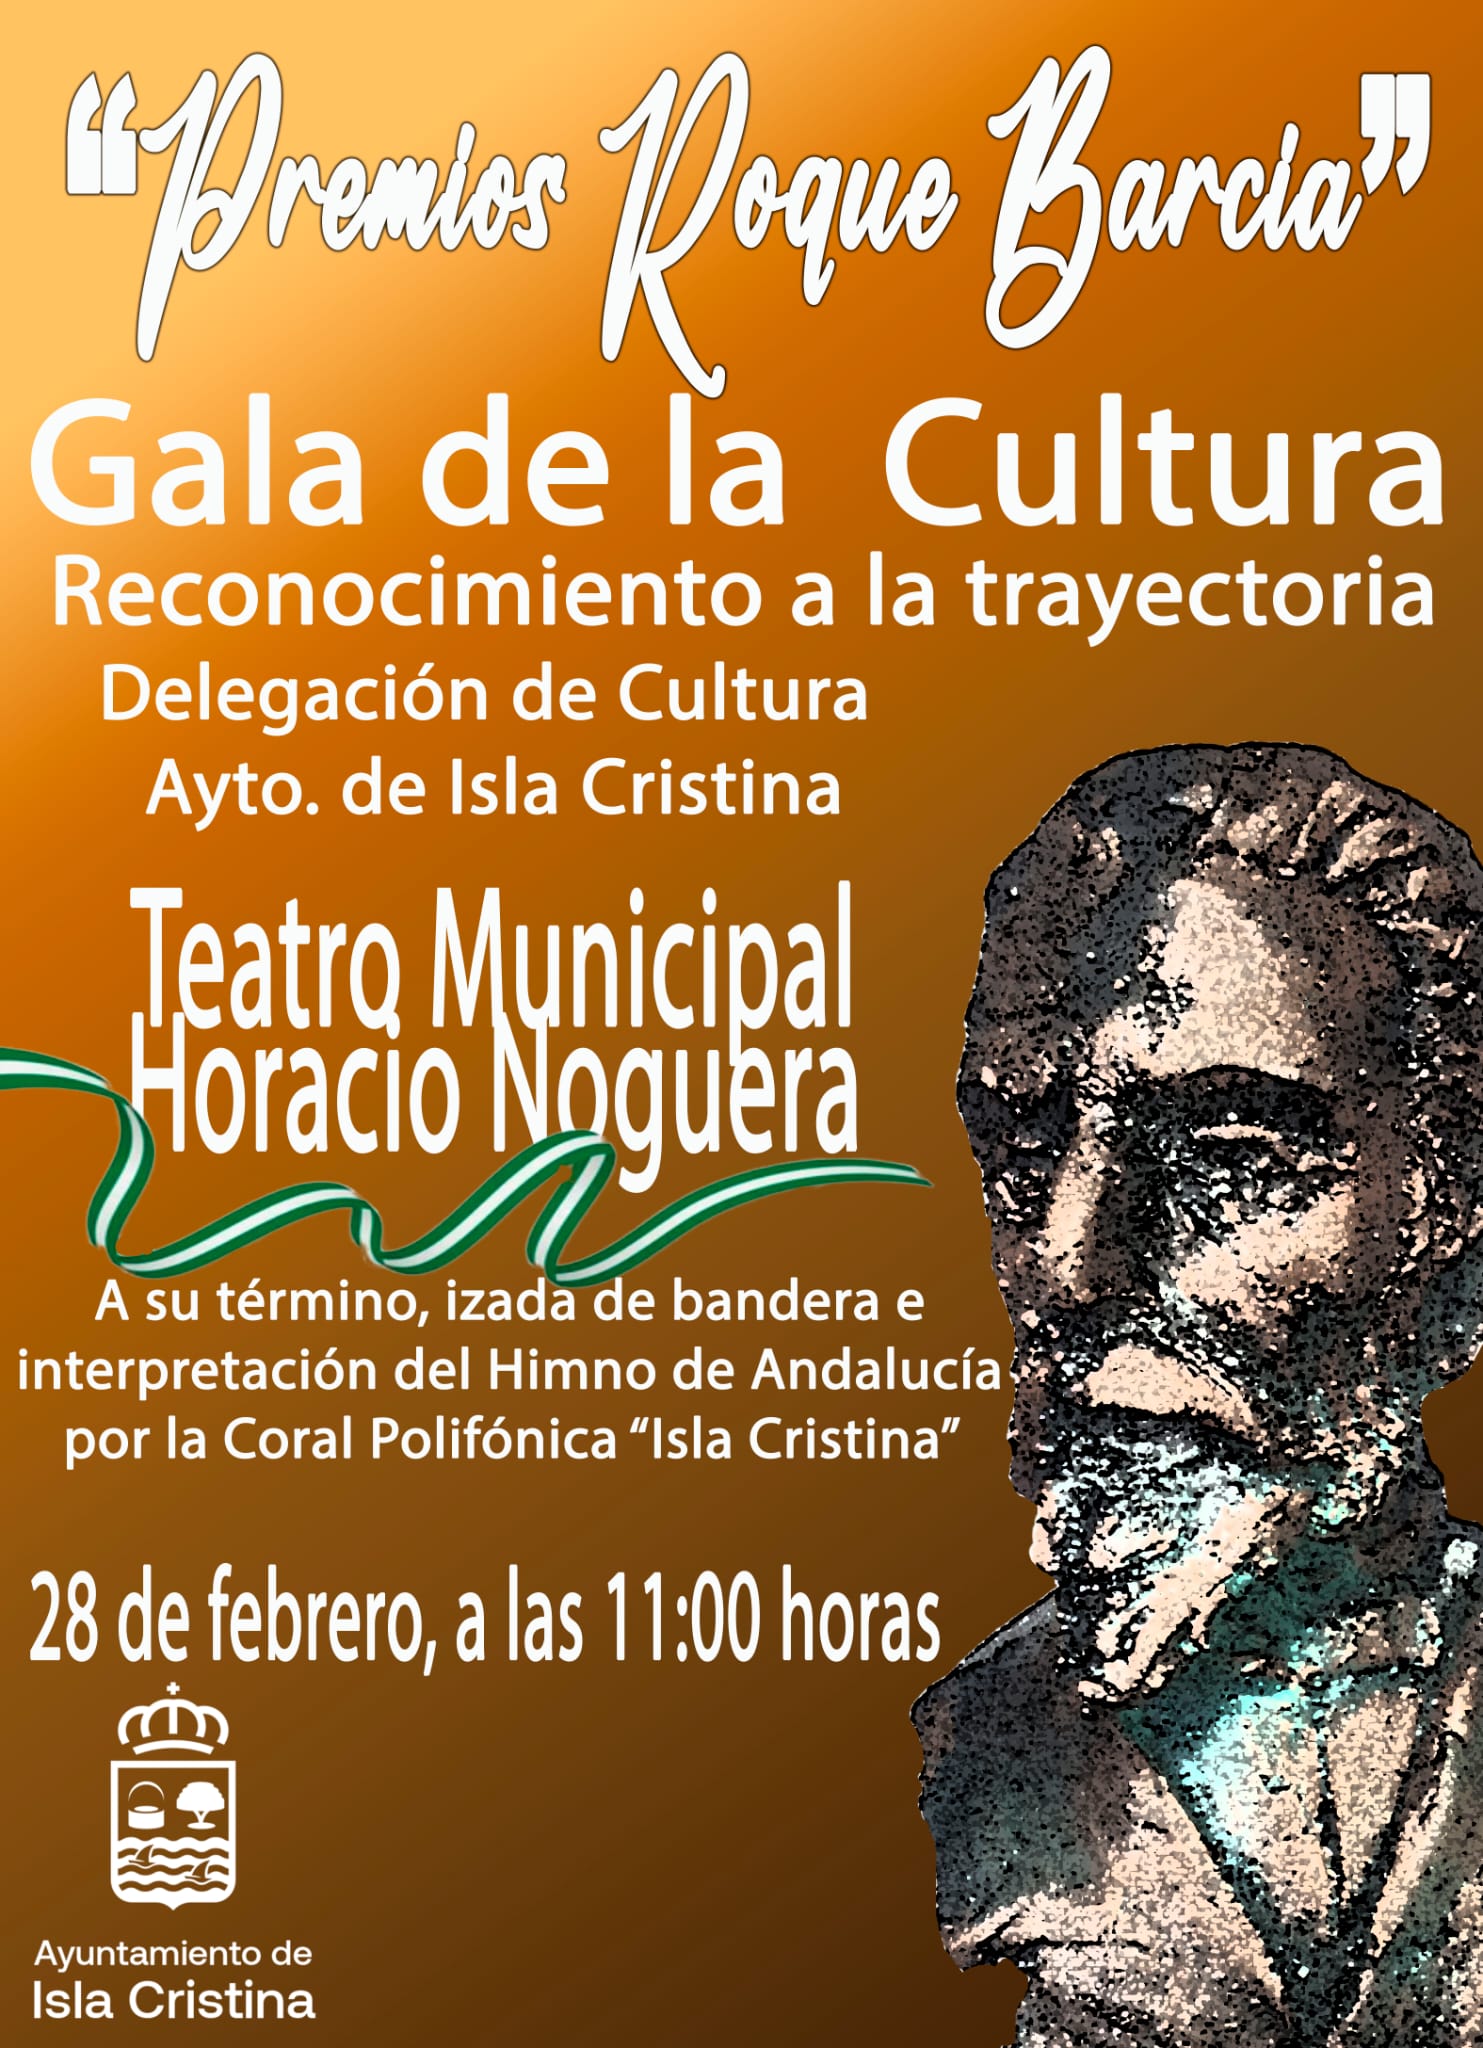 El Ayuntamiento de Isla Cristina instaura los premios «Roque Barcia» que se entregarán en la Gala de la Cultura